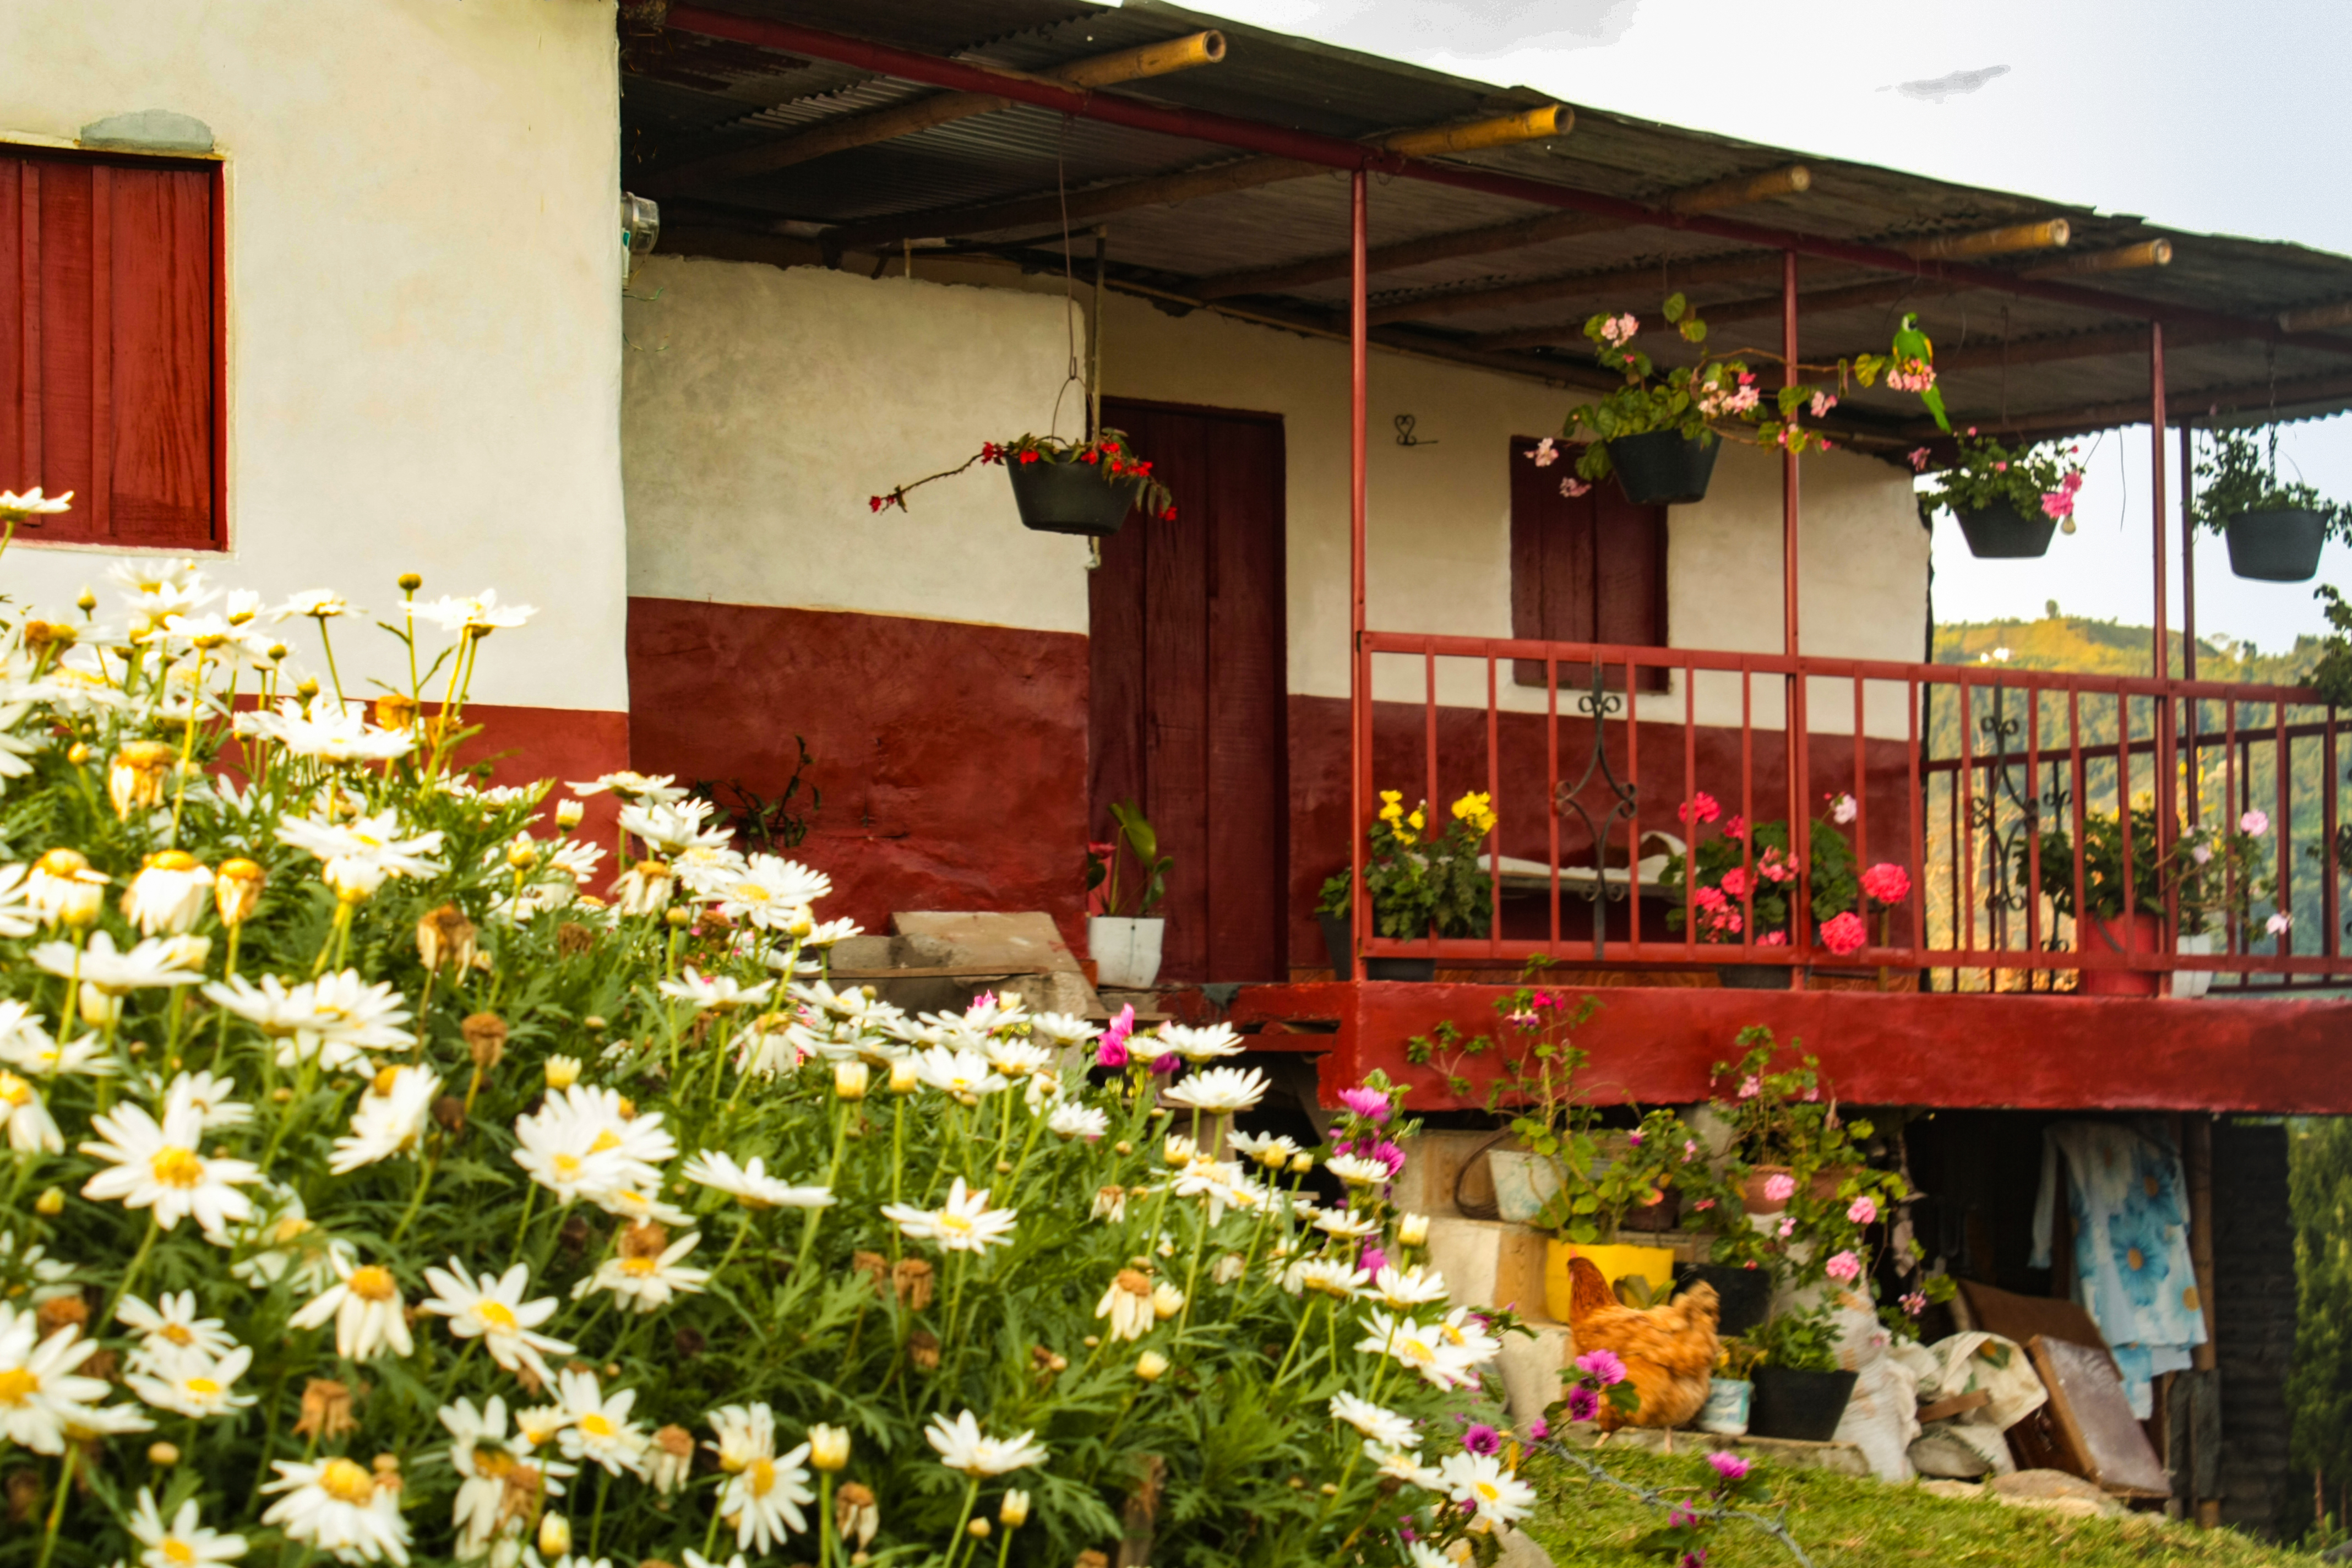 El frente de la casa Pueblo Bonito, Caldas, Colombia